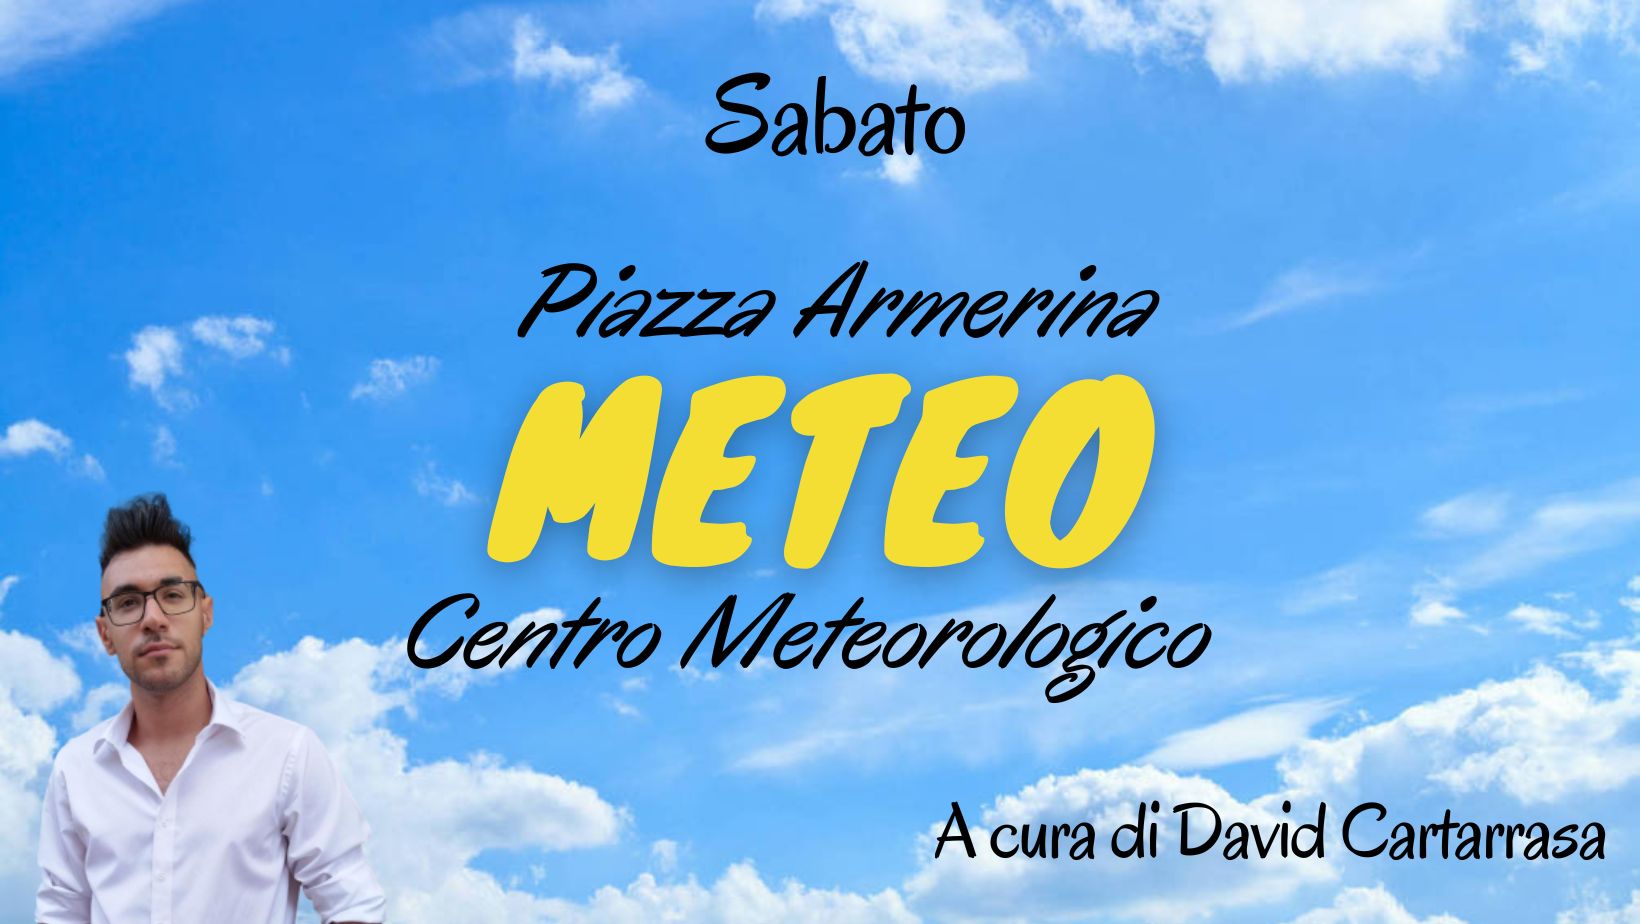 Meteo Piazza Armerina : sabato tra nuvole e pioggie